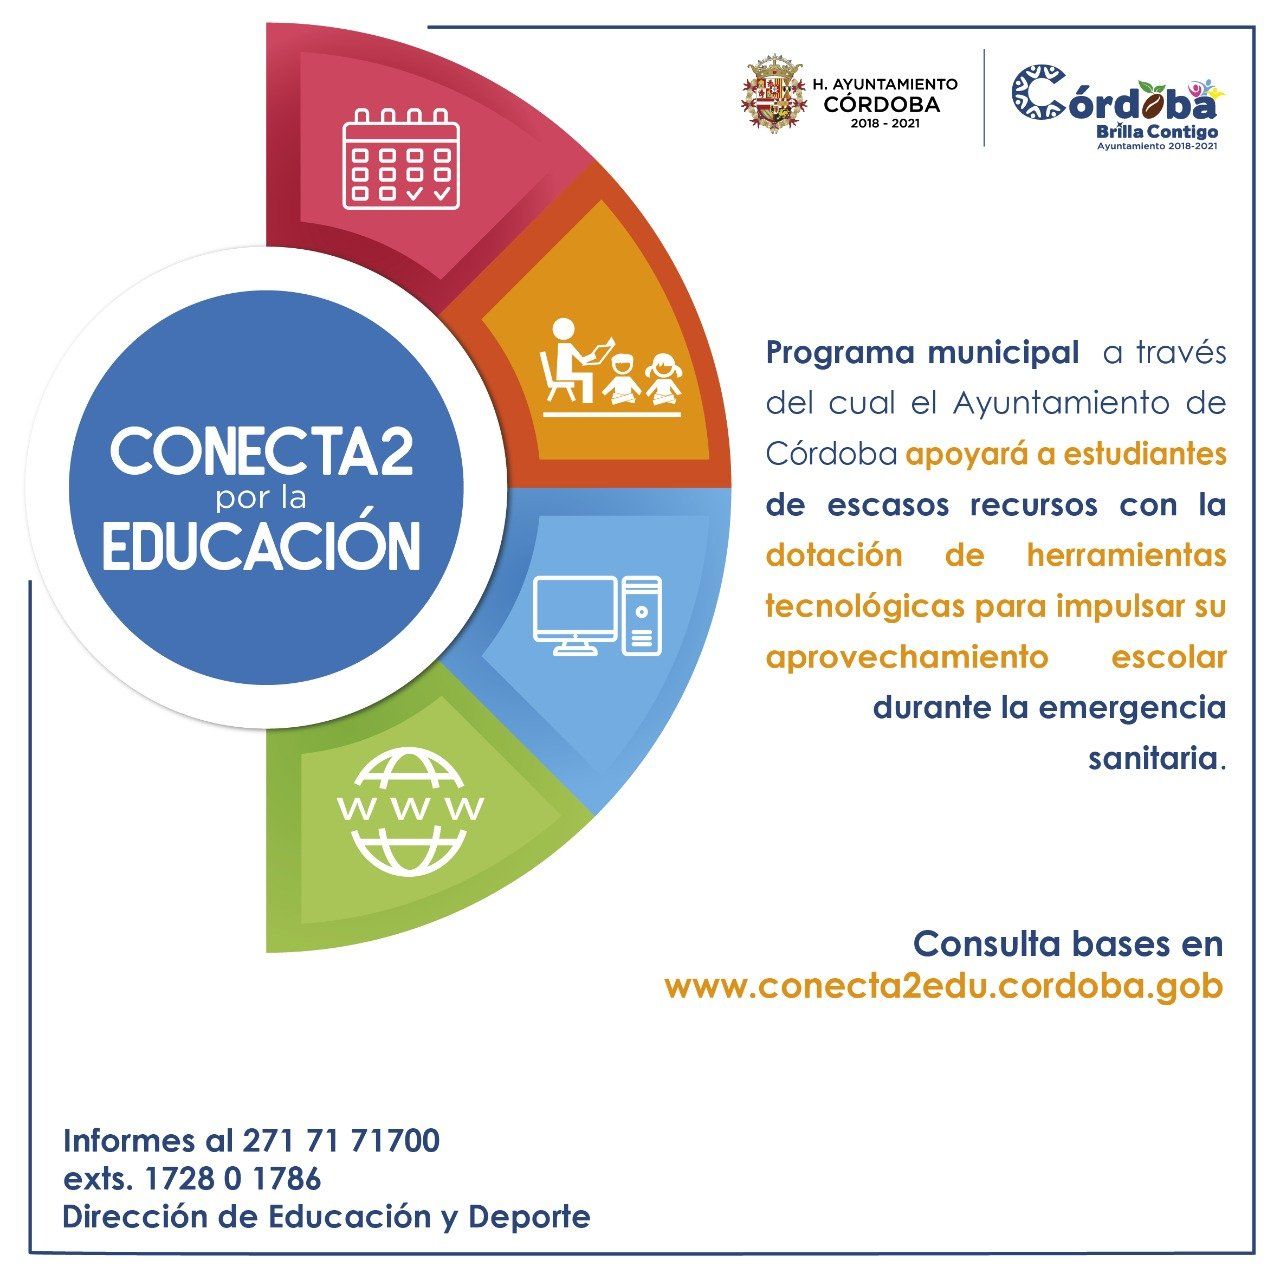 Invita Ayuntamiento de Córdoba a inscribirse a Conecta2 por la Educación para solicitar donación de equipos de cómputo